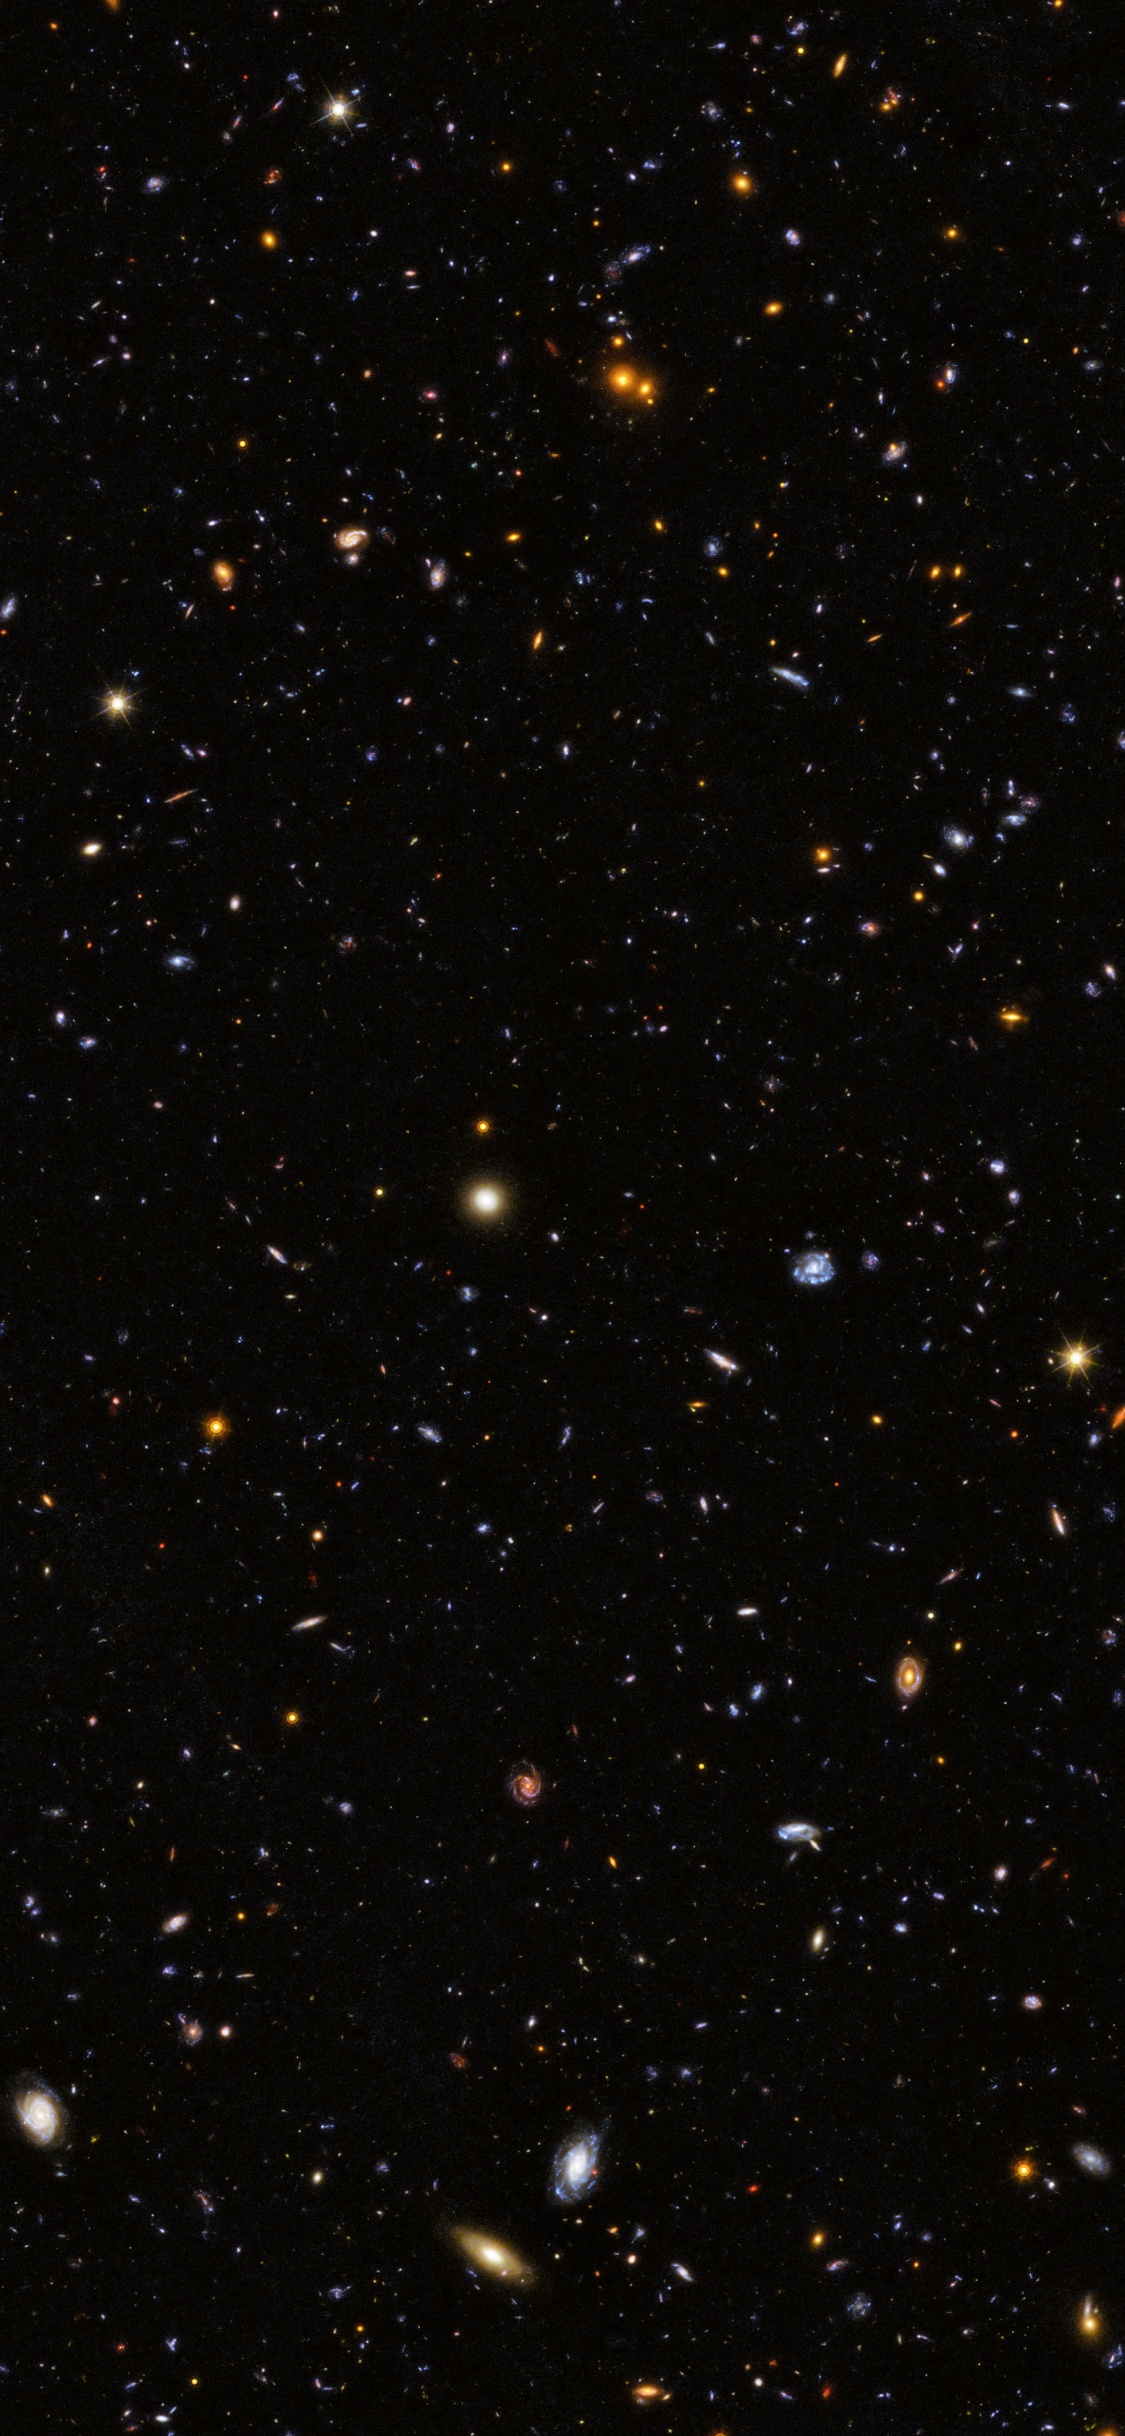 Schwarze Und Weiße Sterne am Himmel. Wallpaper in 1125x2436 Resolution